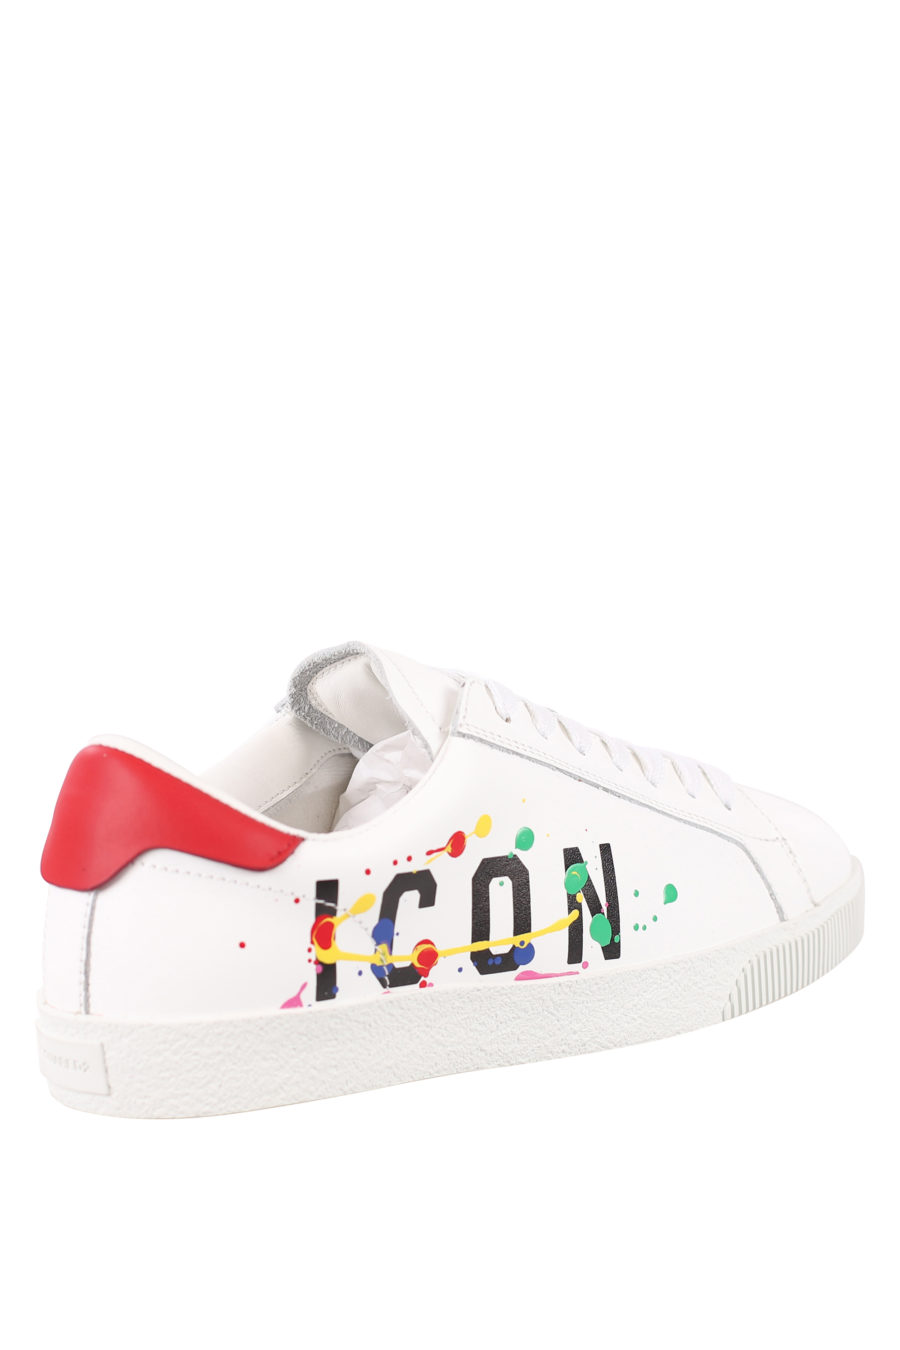 Zapatillas blancas con logo "icon splash" - IMG 0707